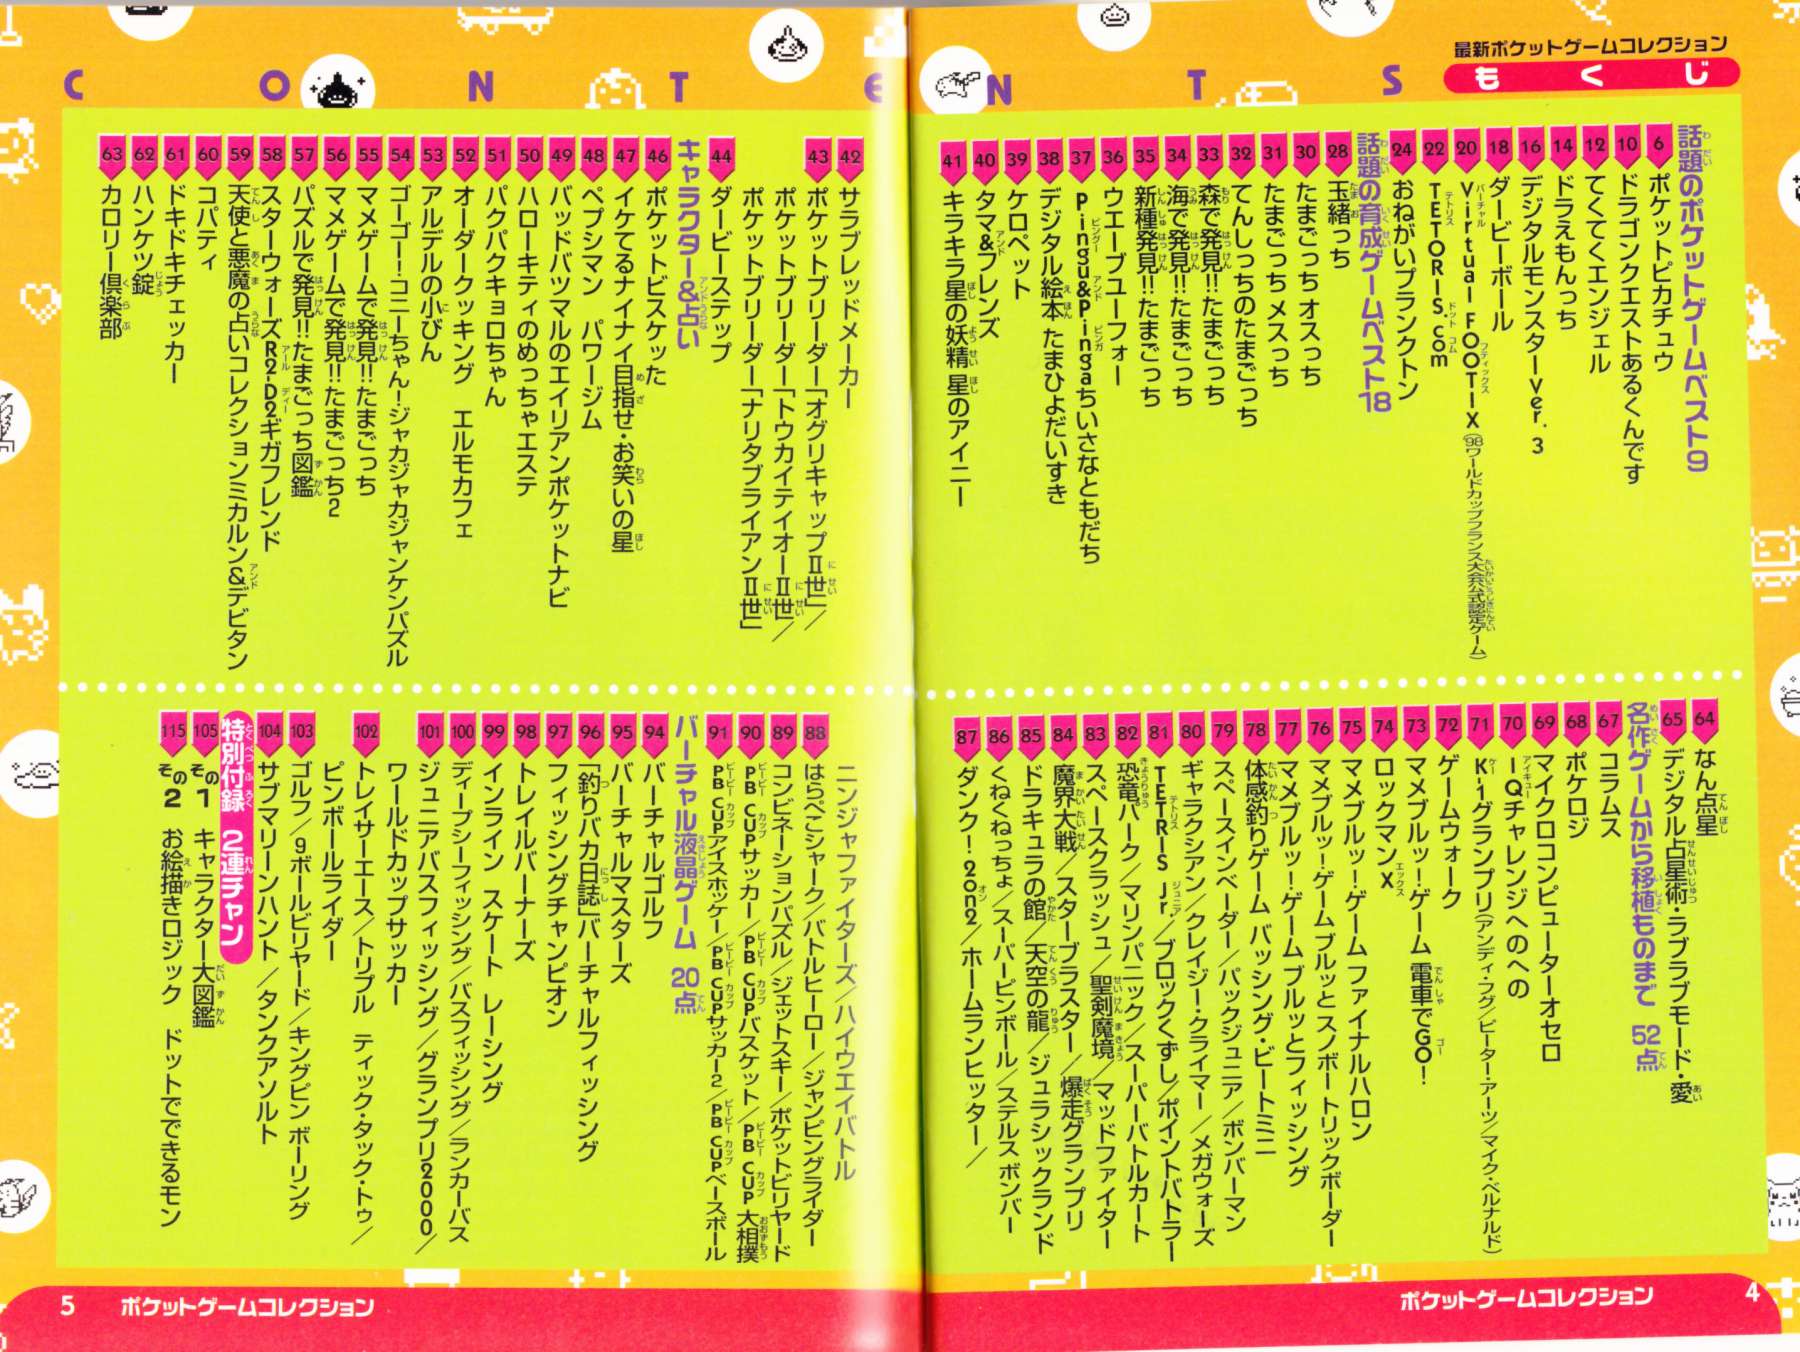 絶対SIMPLE主義 - ピカチュウから中村玉緒まで！1998年7月10日発行「最新ポケットゲームコレクション」を読む！